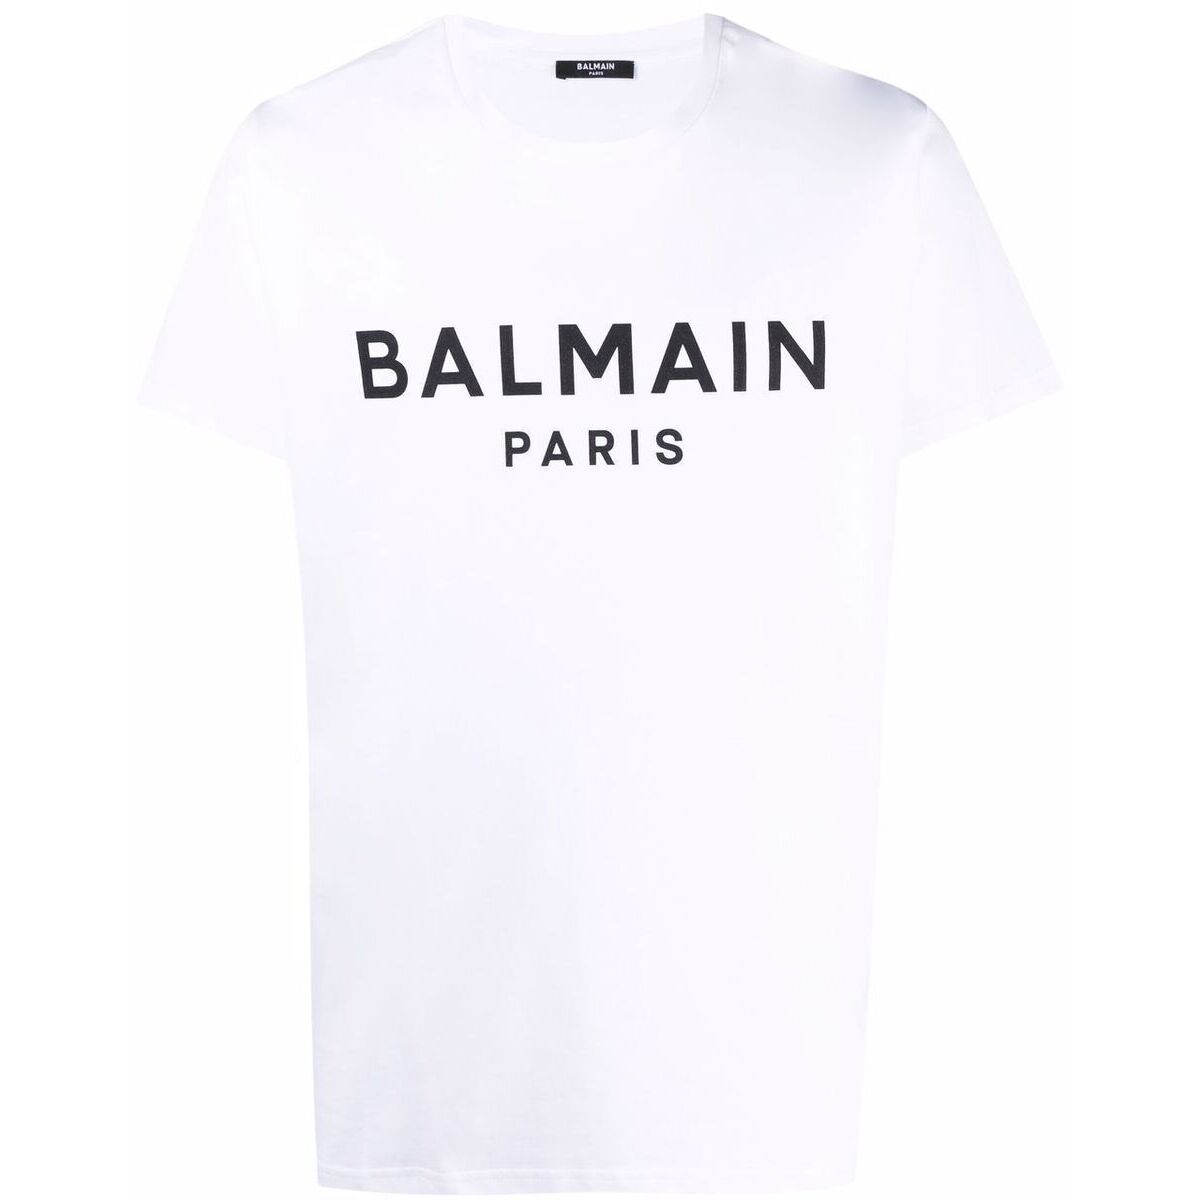 使い勝手の良い BALMAIN バルマン WHITE Tシャツ メンズ